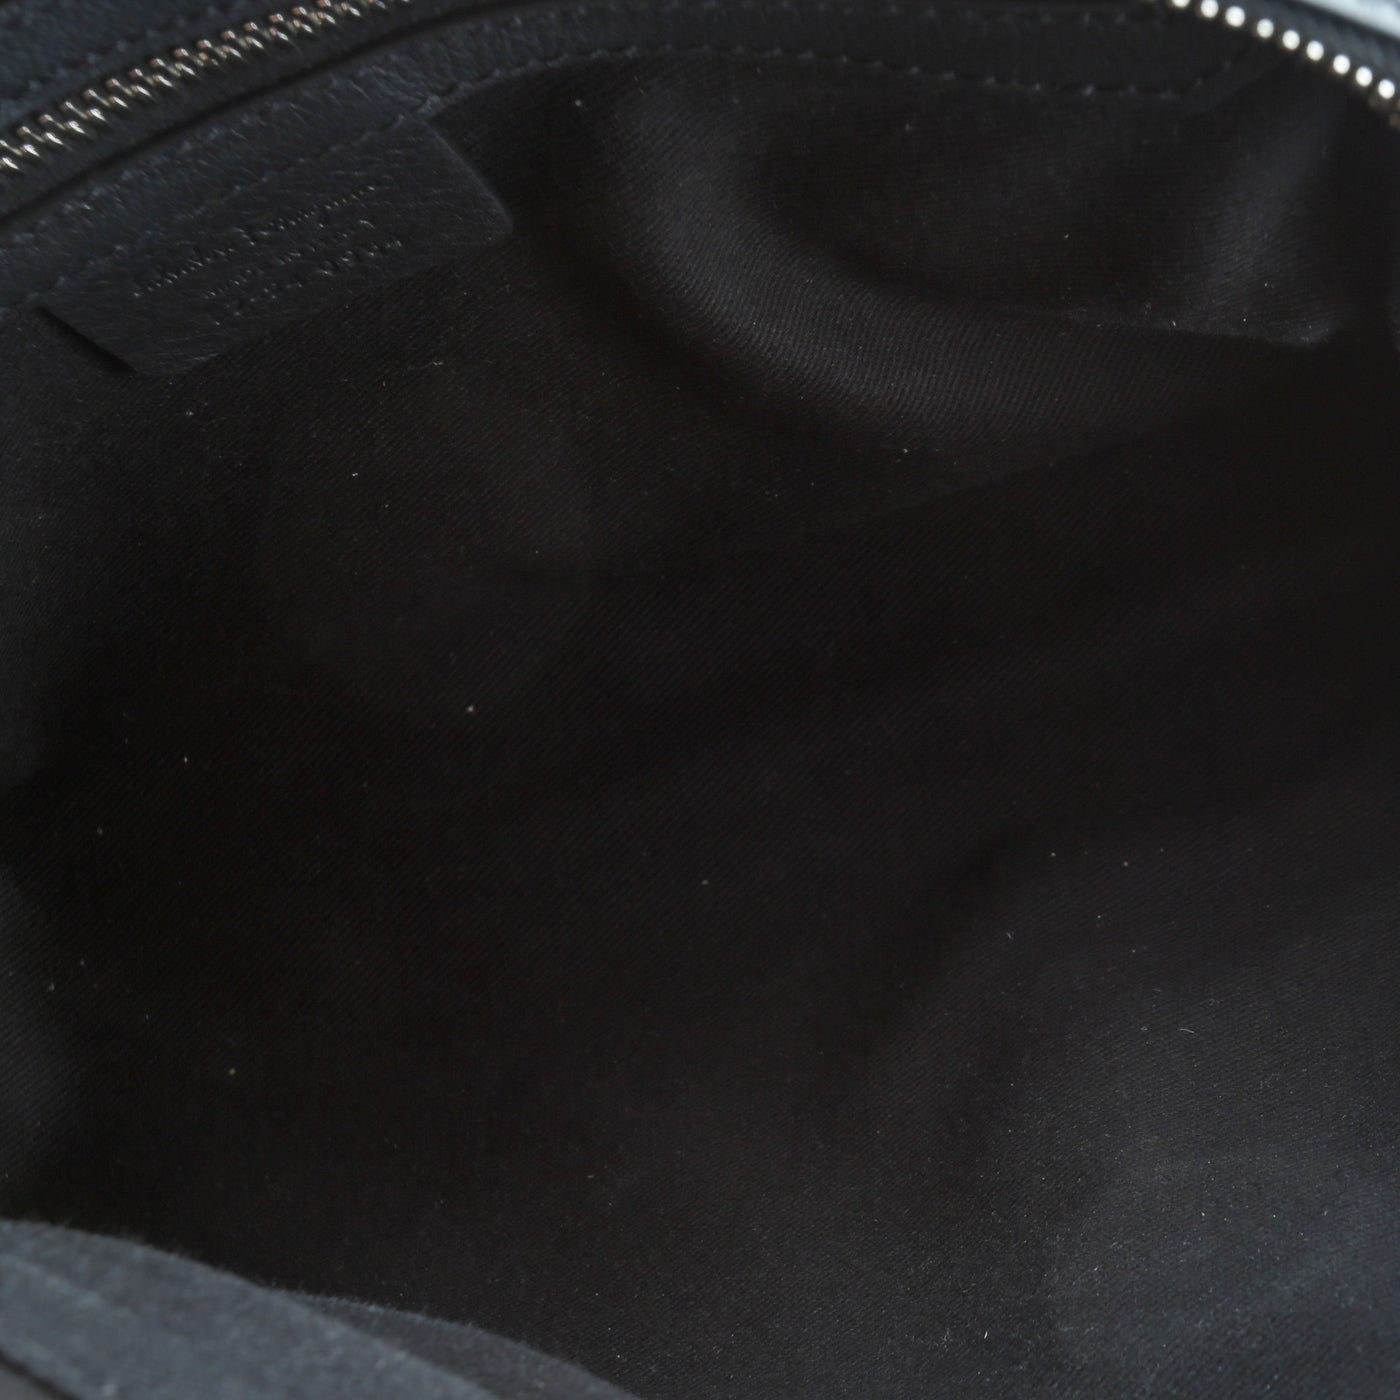 FERRAGAMO Gancini Embossed Leather Shoulder Bag - Black